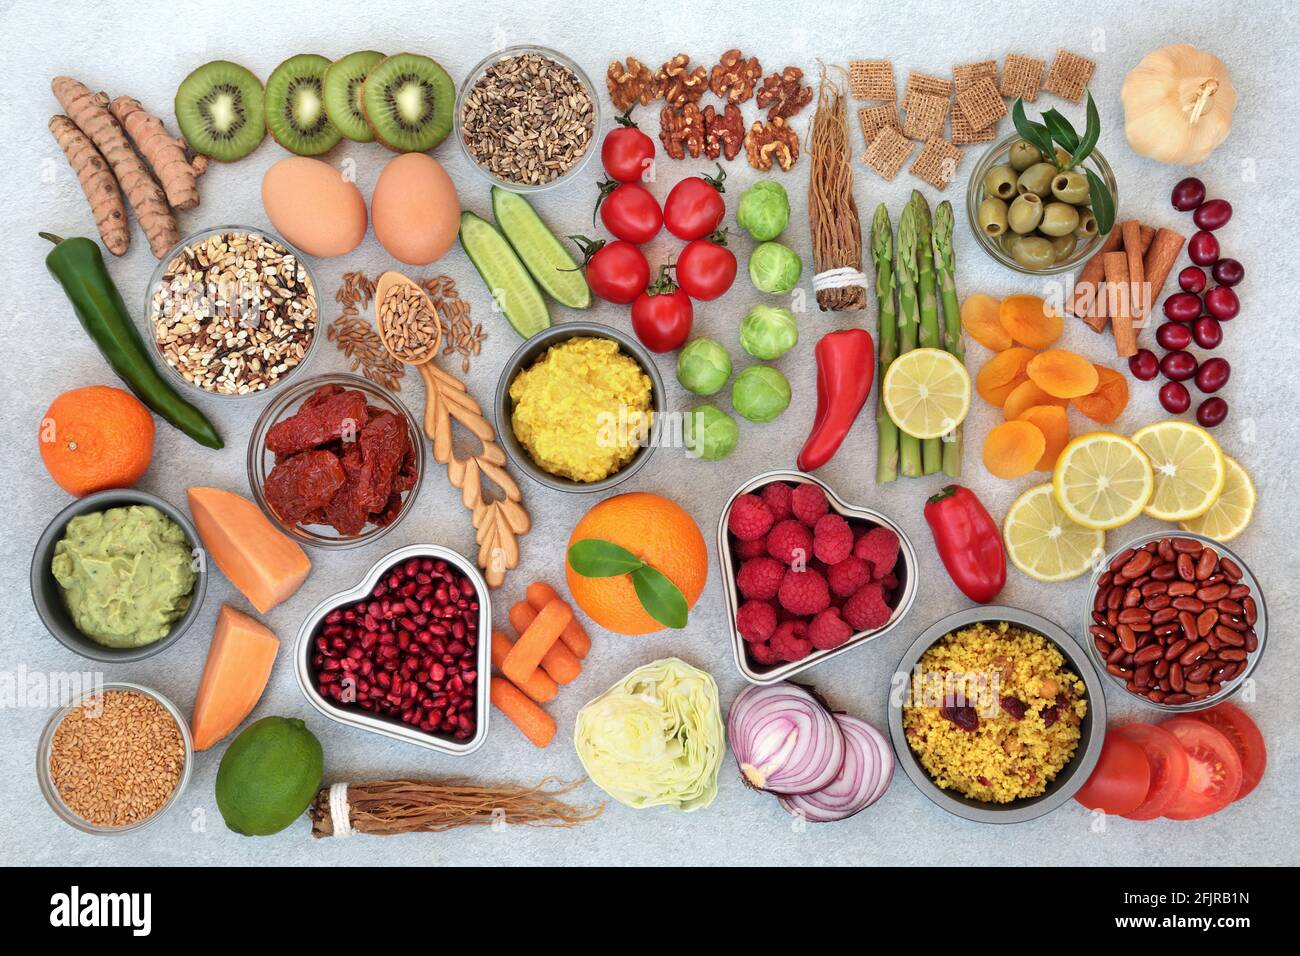 Immunomotaggio alimentare sano con frutta, verdura, cereali, cereali, latticini, erbe, spezie e tuffi ad alto contenuto proteico, omega 3, antocianine, antiossidanti. Foto Stock